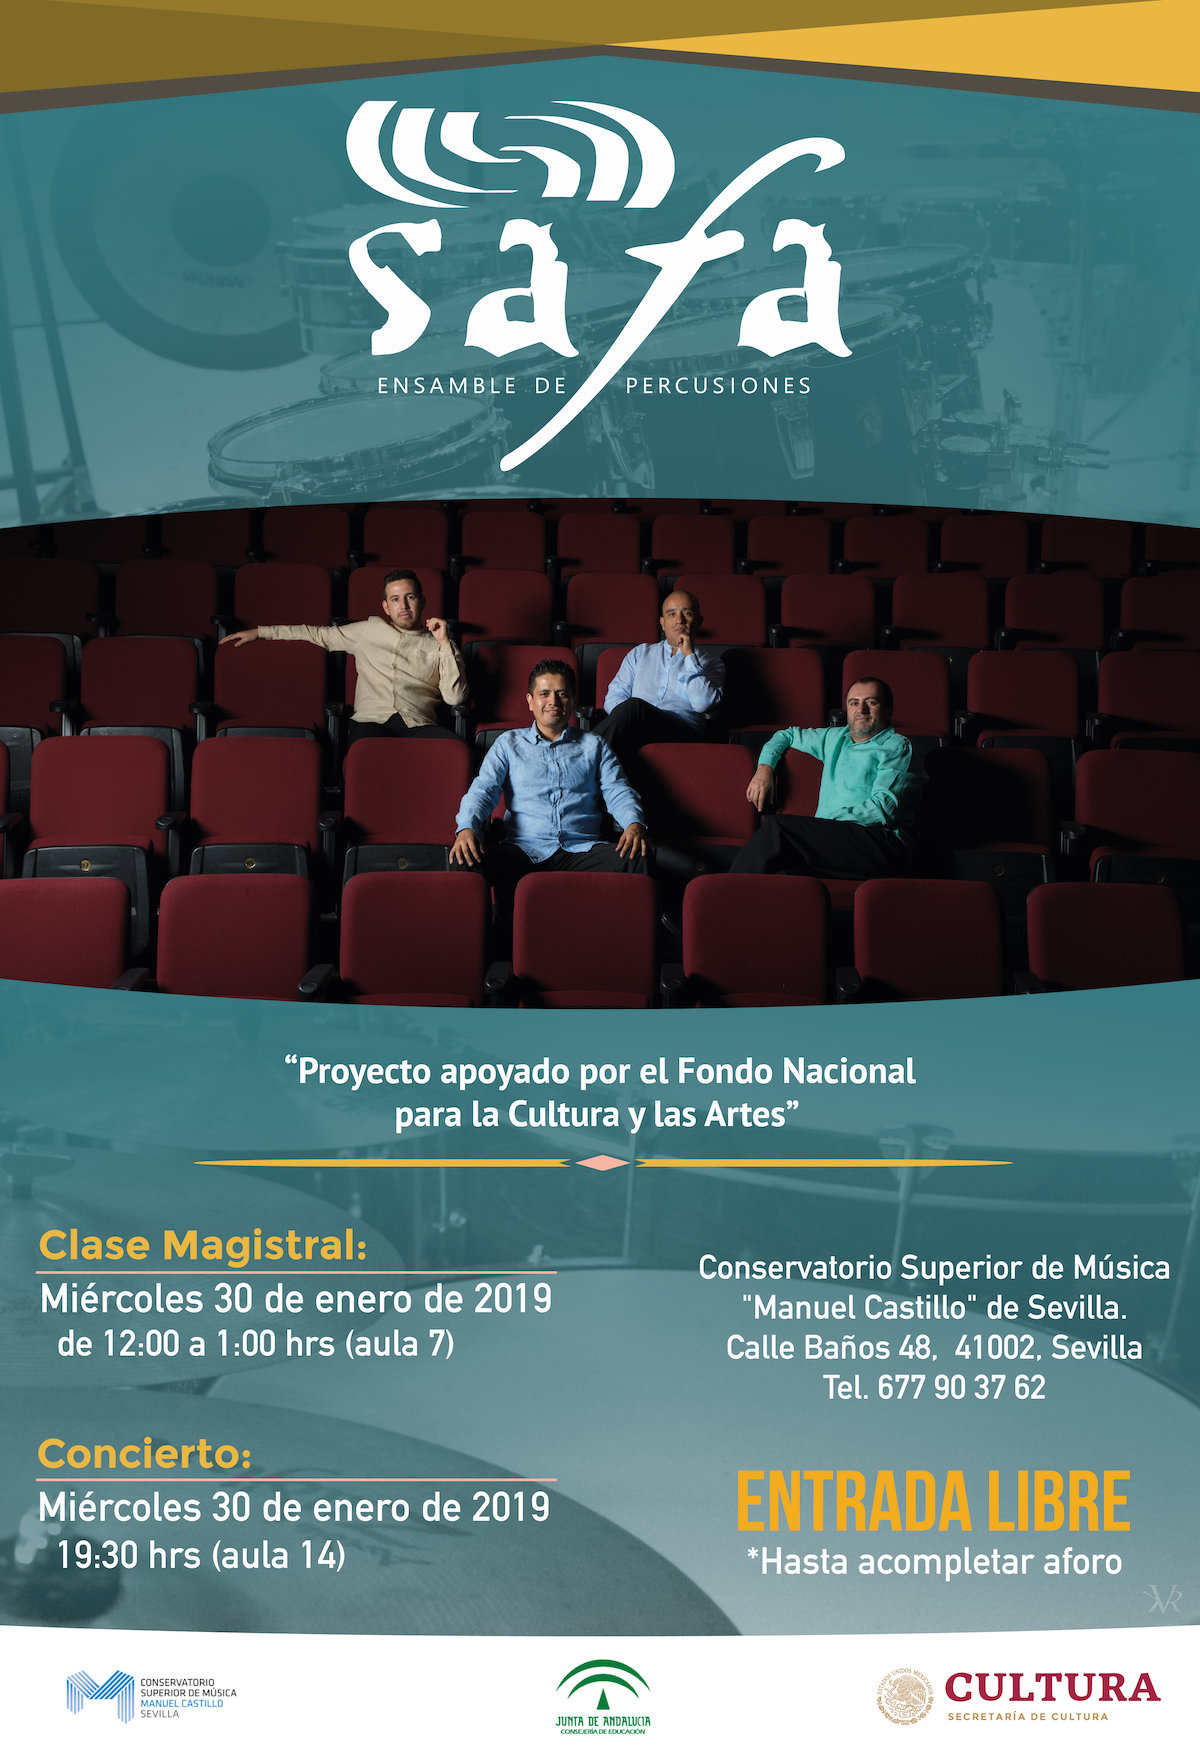 Safa Ensemble de Percusiones de México